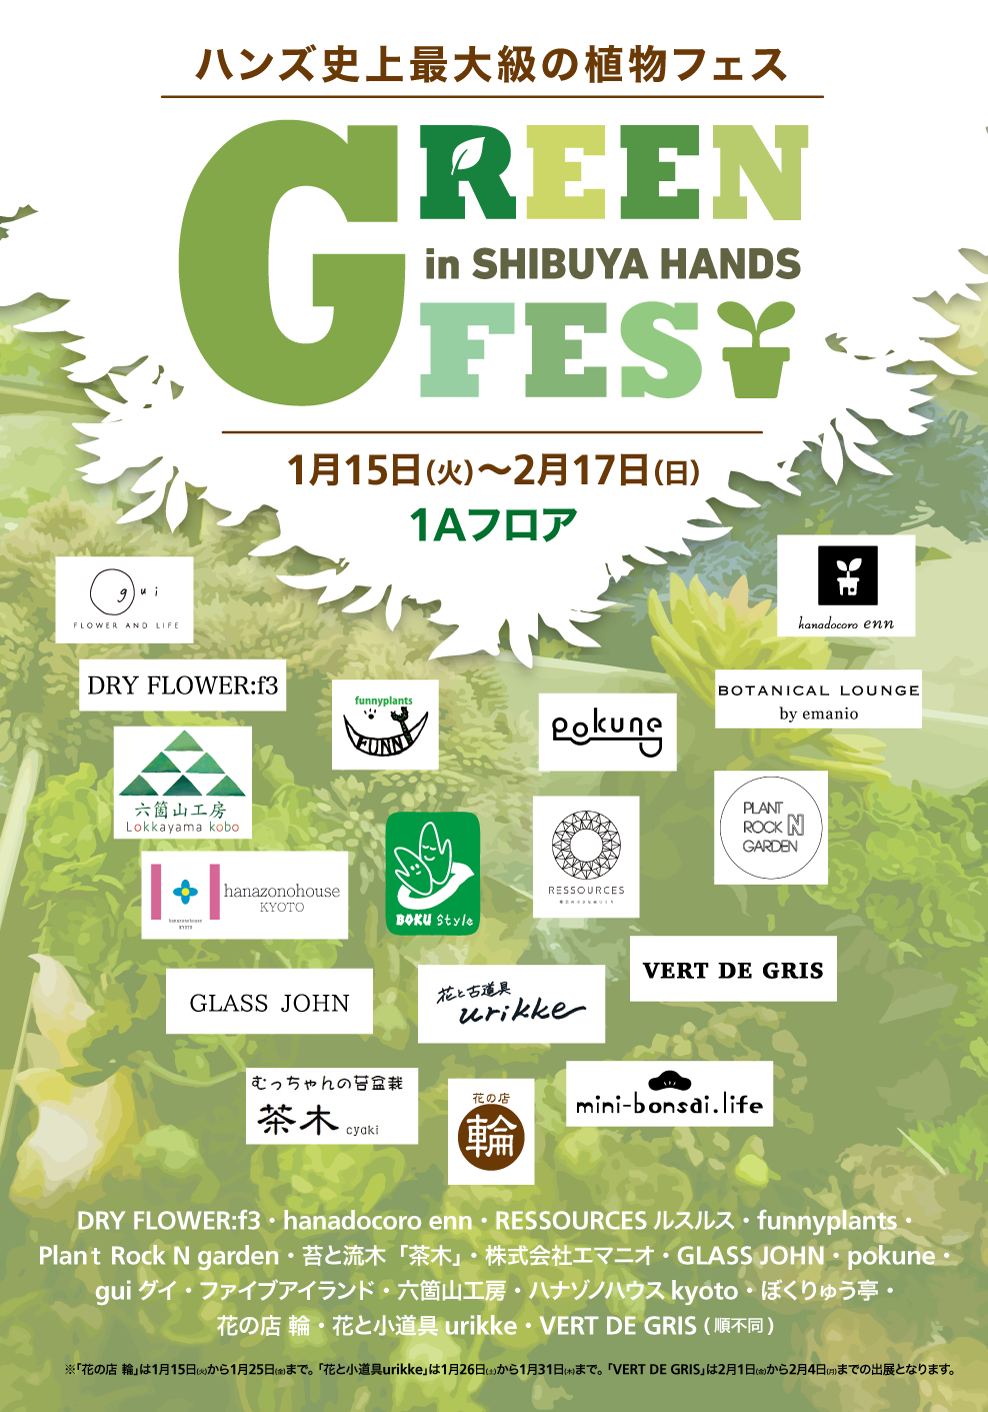 https://shibuya.tokyu-hands.co.jp/item/greenfes_01.png